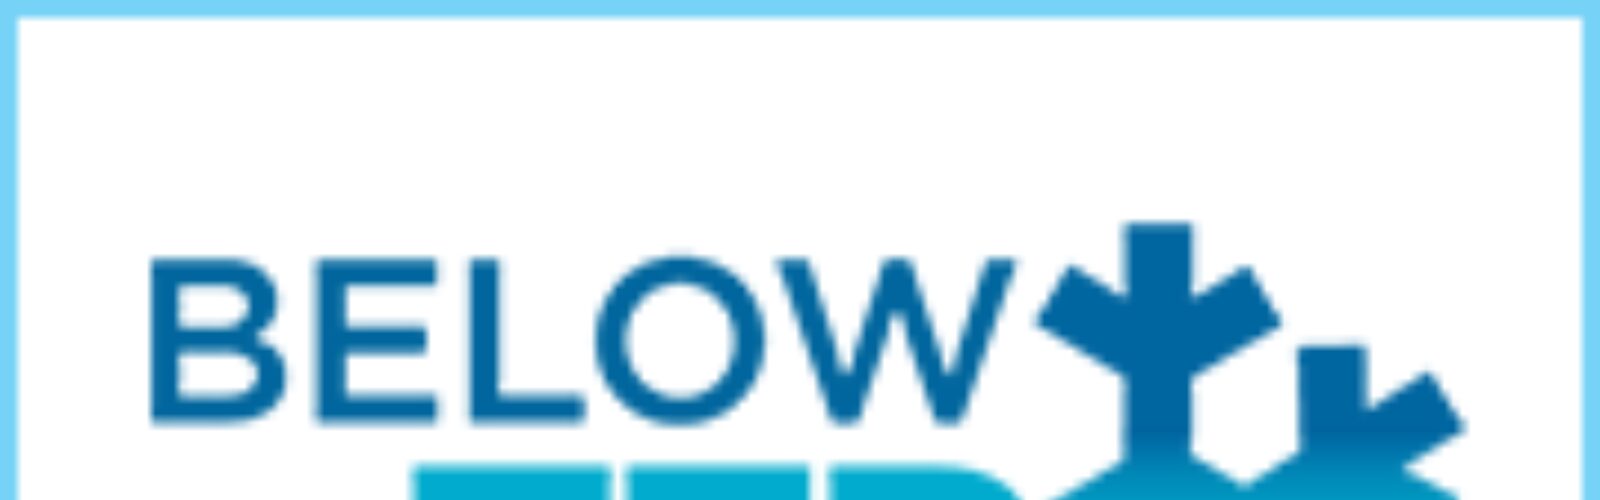 Belowzero logo